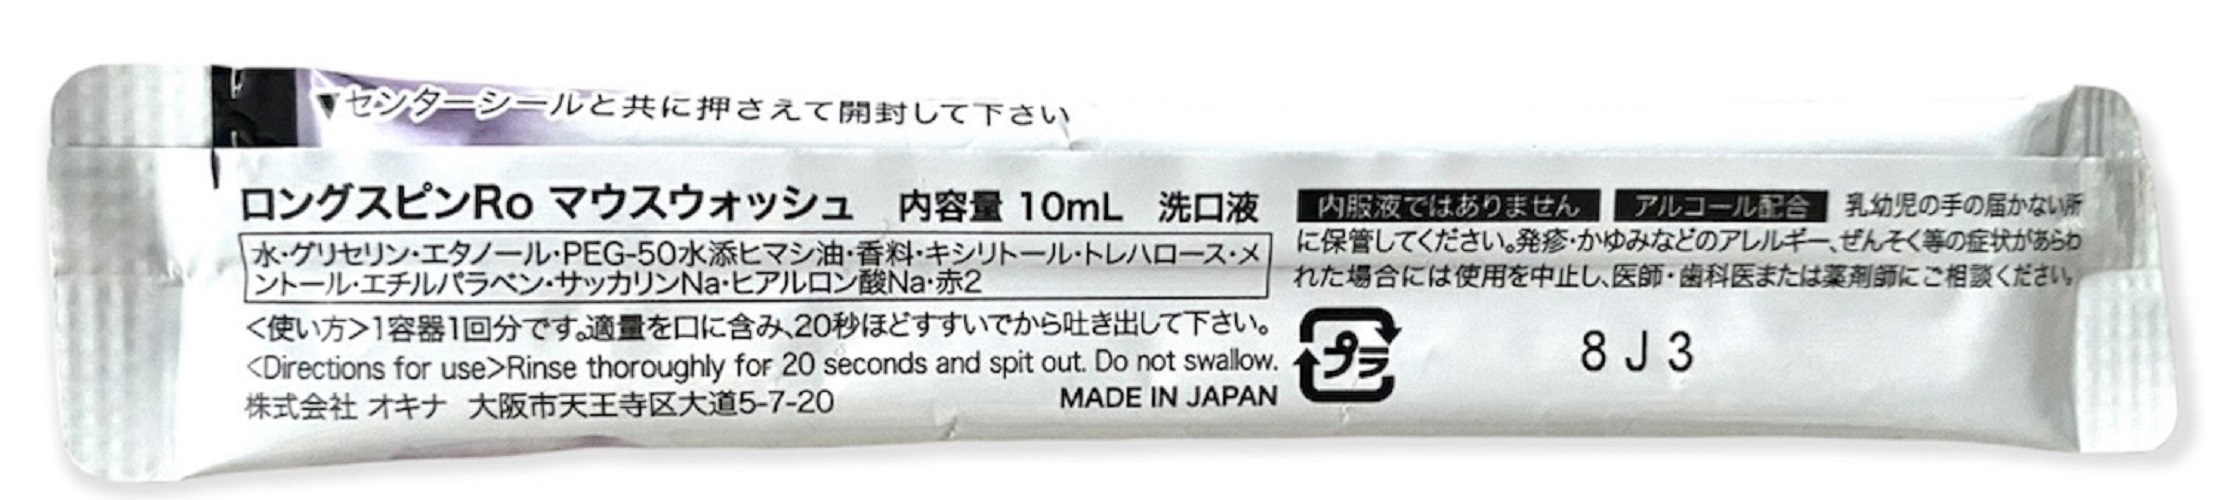 Nước súc miệng dạng thanh LONG SPIN ROSE Nhật Bản hương Hoa Hồng – Hộp 100 thanh x 10ml